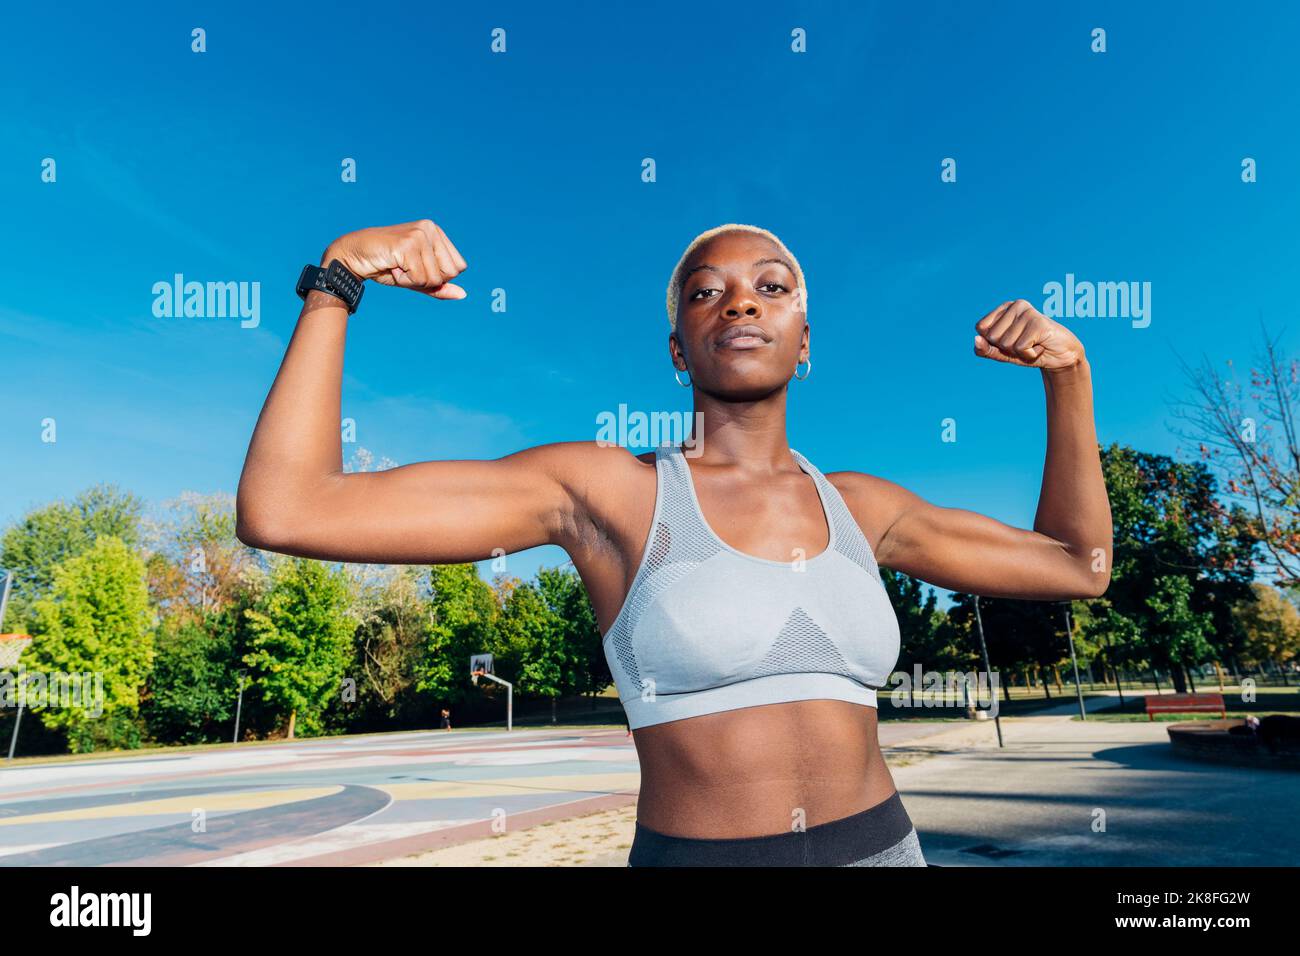 Jeune athlète montrant des biceps sur un terrain de sport Banque D'Images